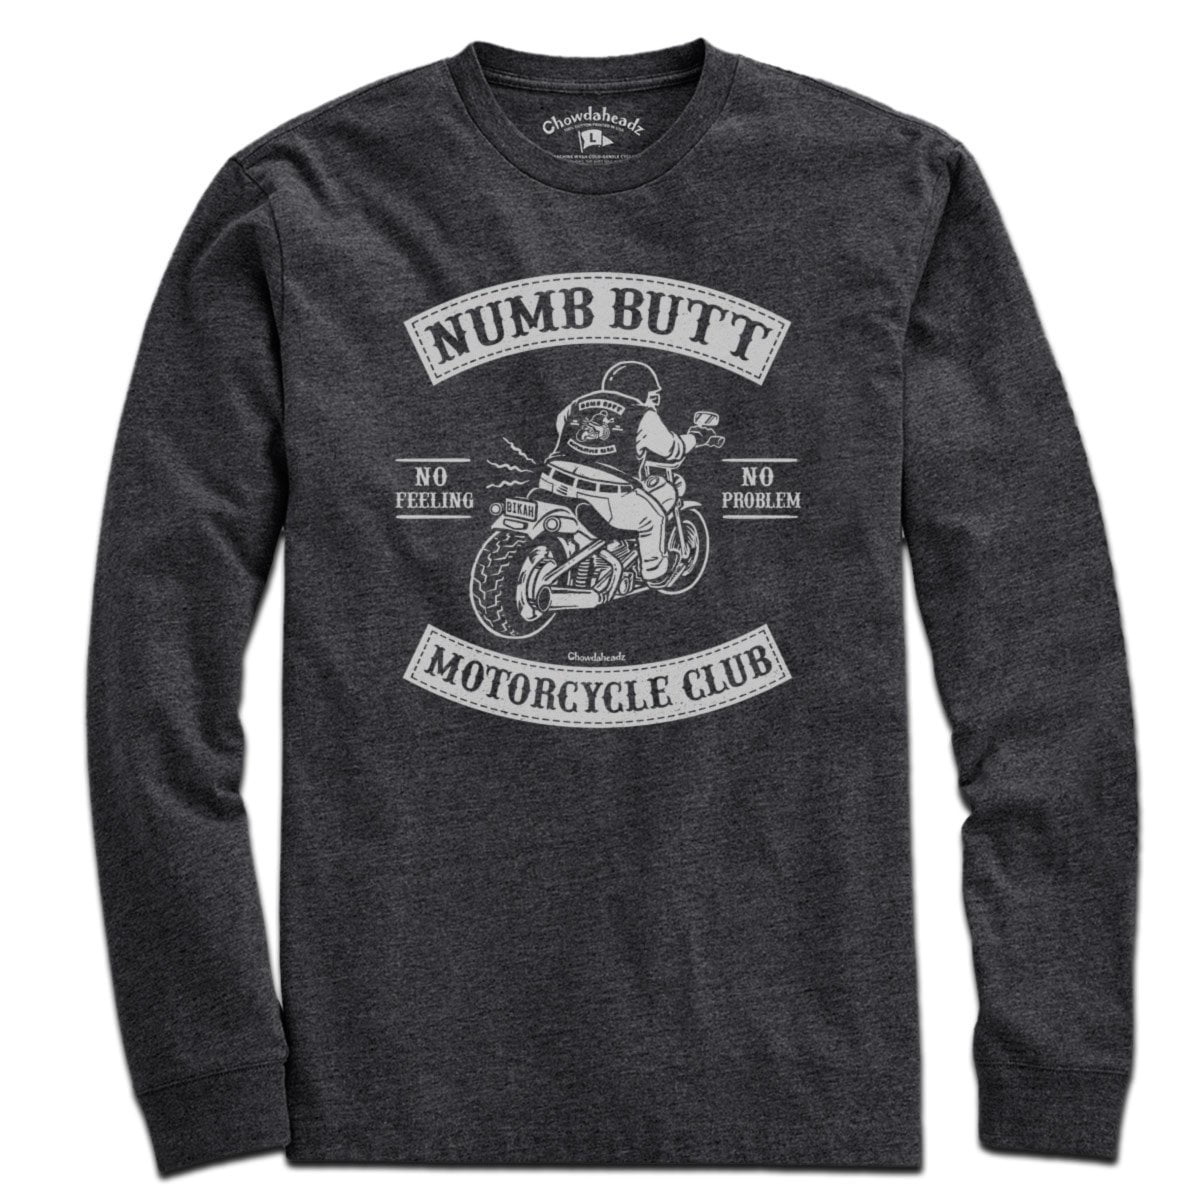 Numb Butt Motorcycle Club T-Shirt - Chowdaheadz